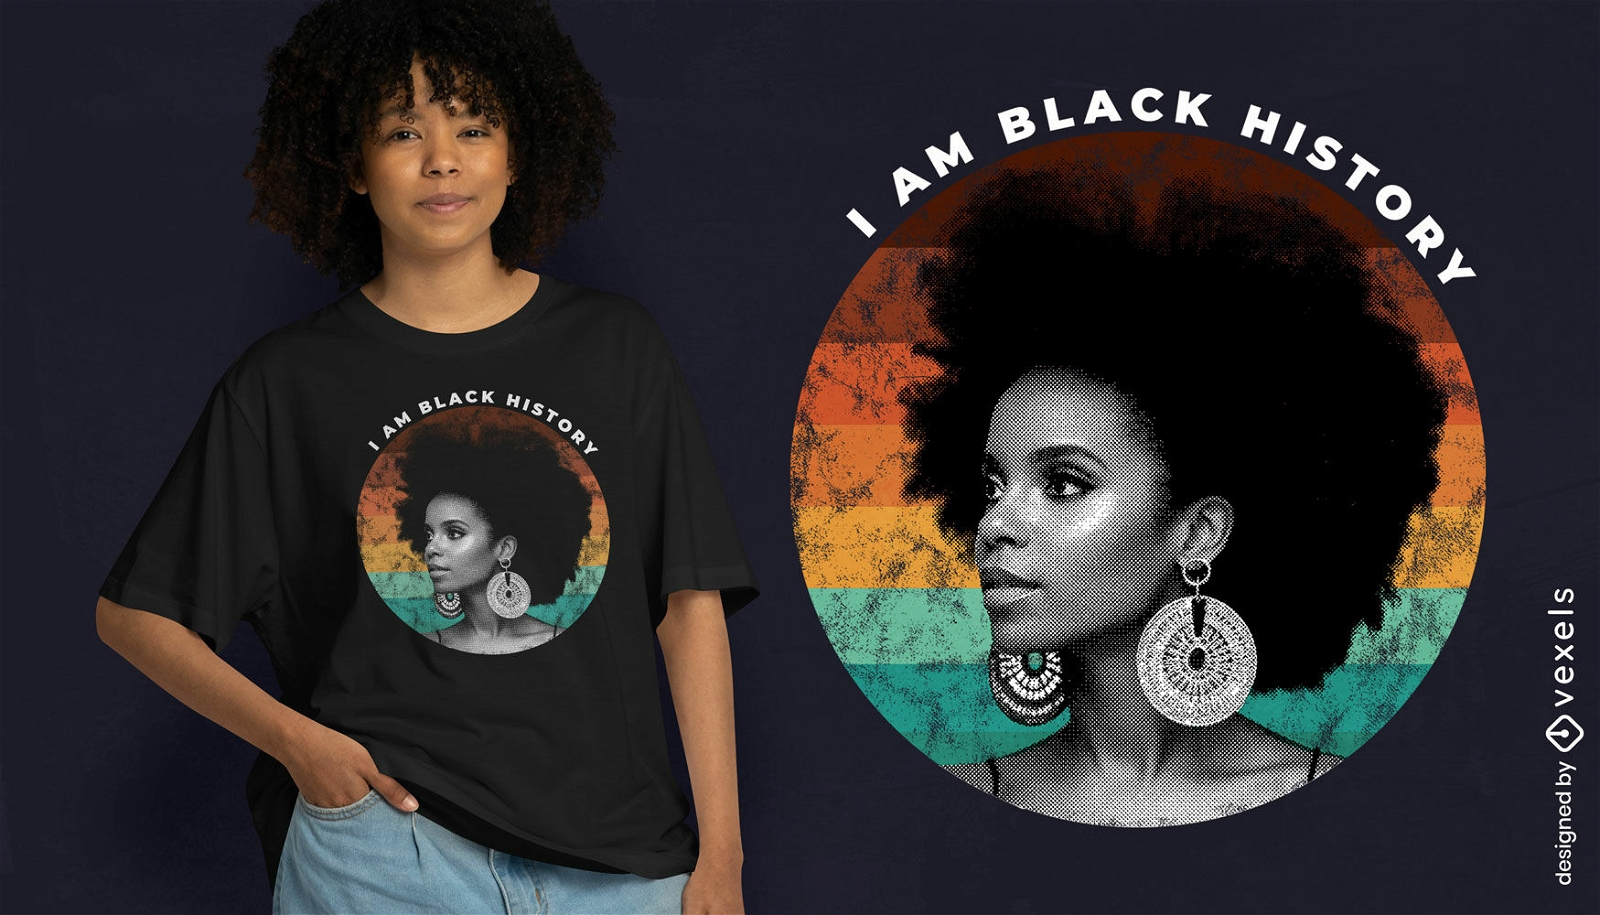 Diseño de camiseta del orgullo de la historia negra.